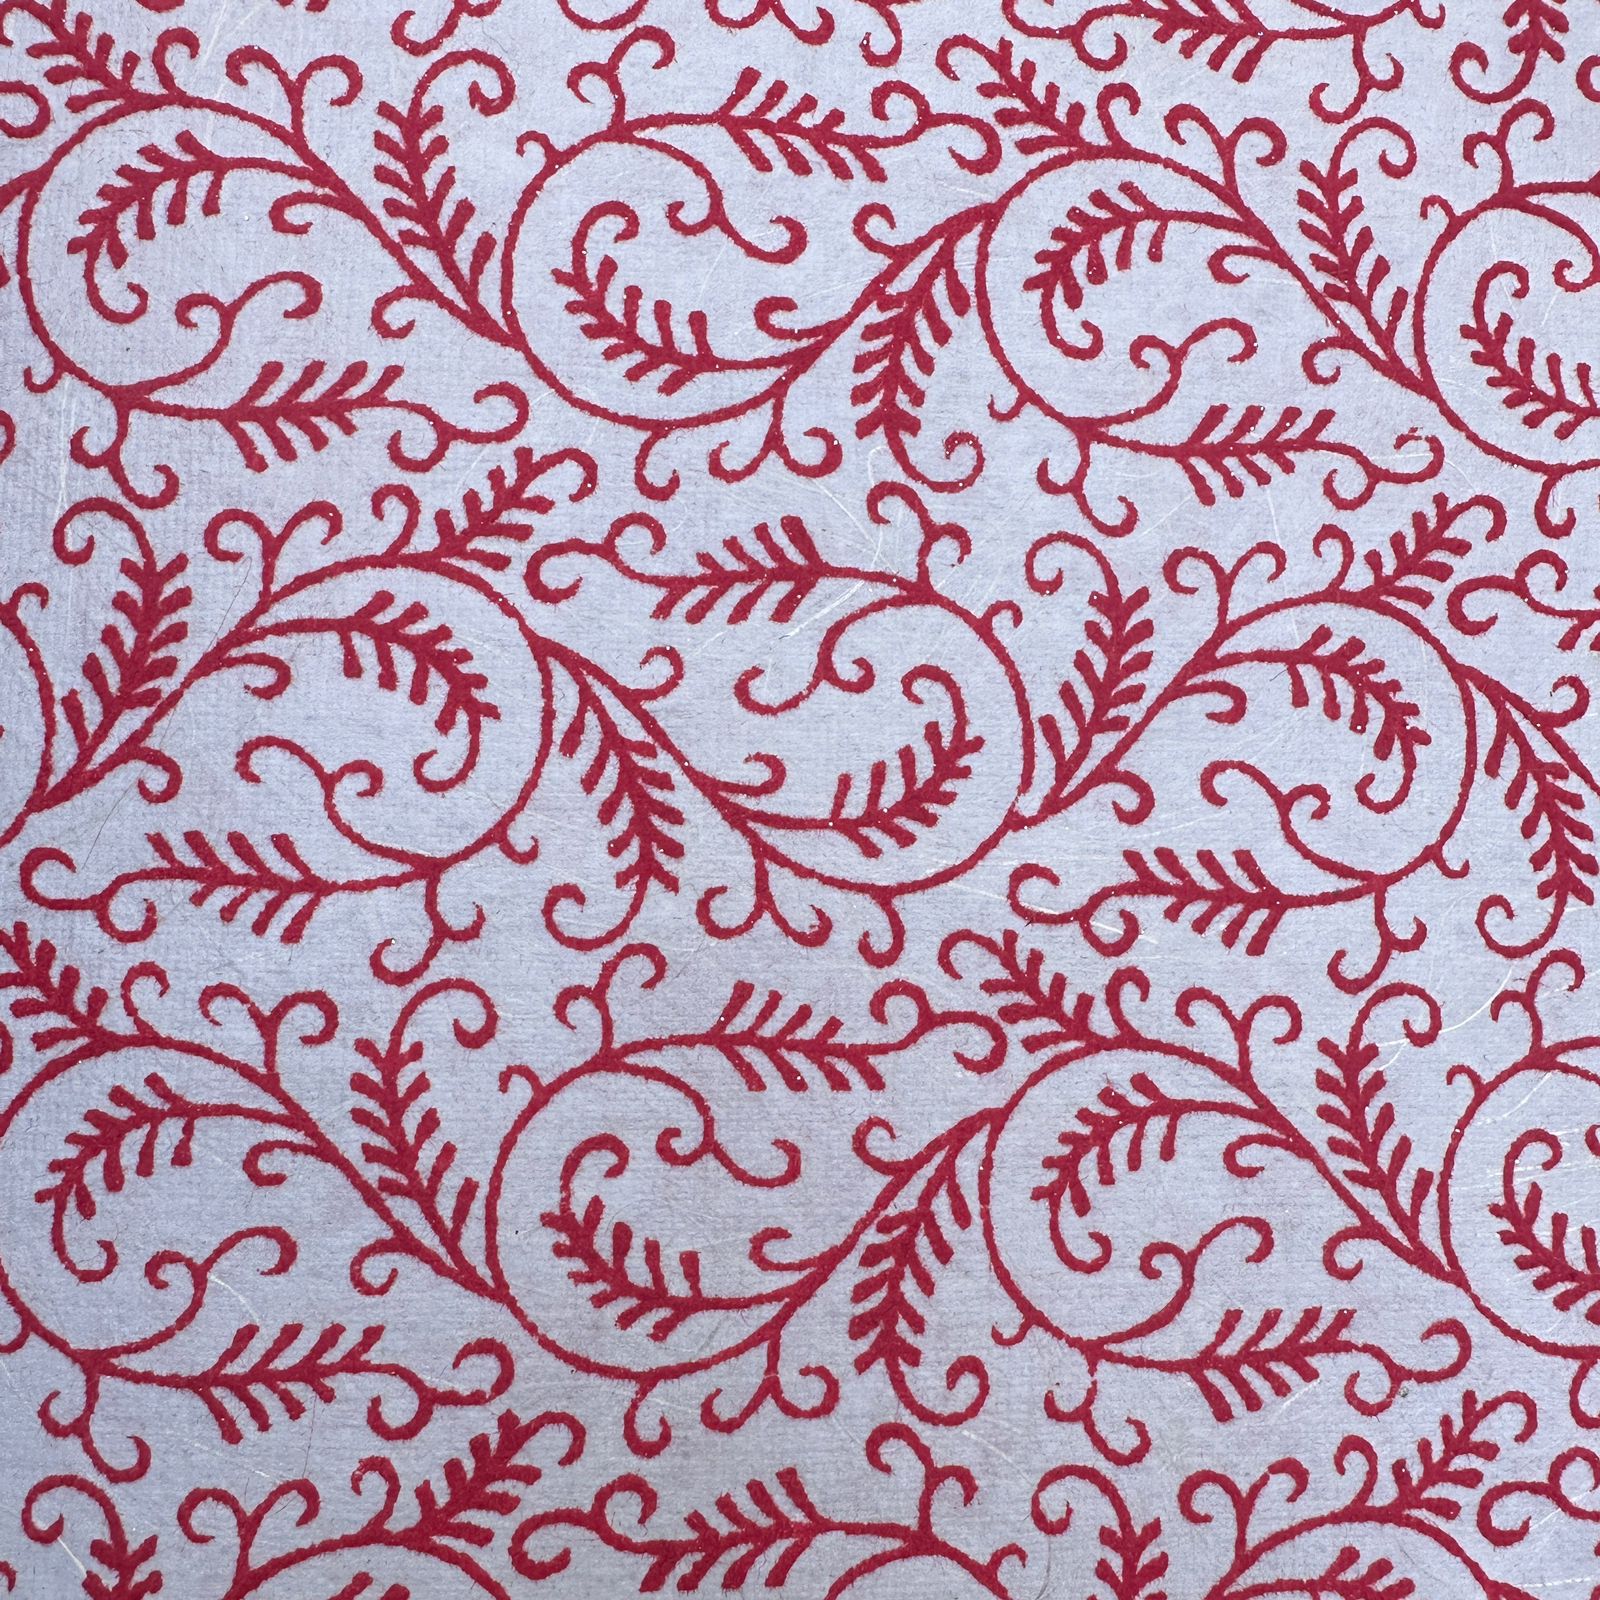 Silk Handmade paper Sheets in Red Velvet Print